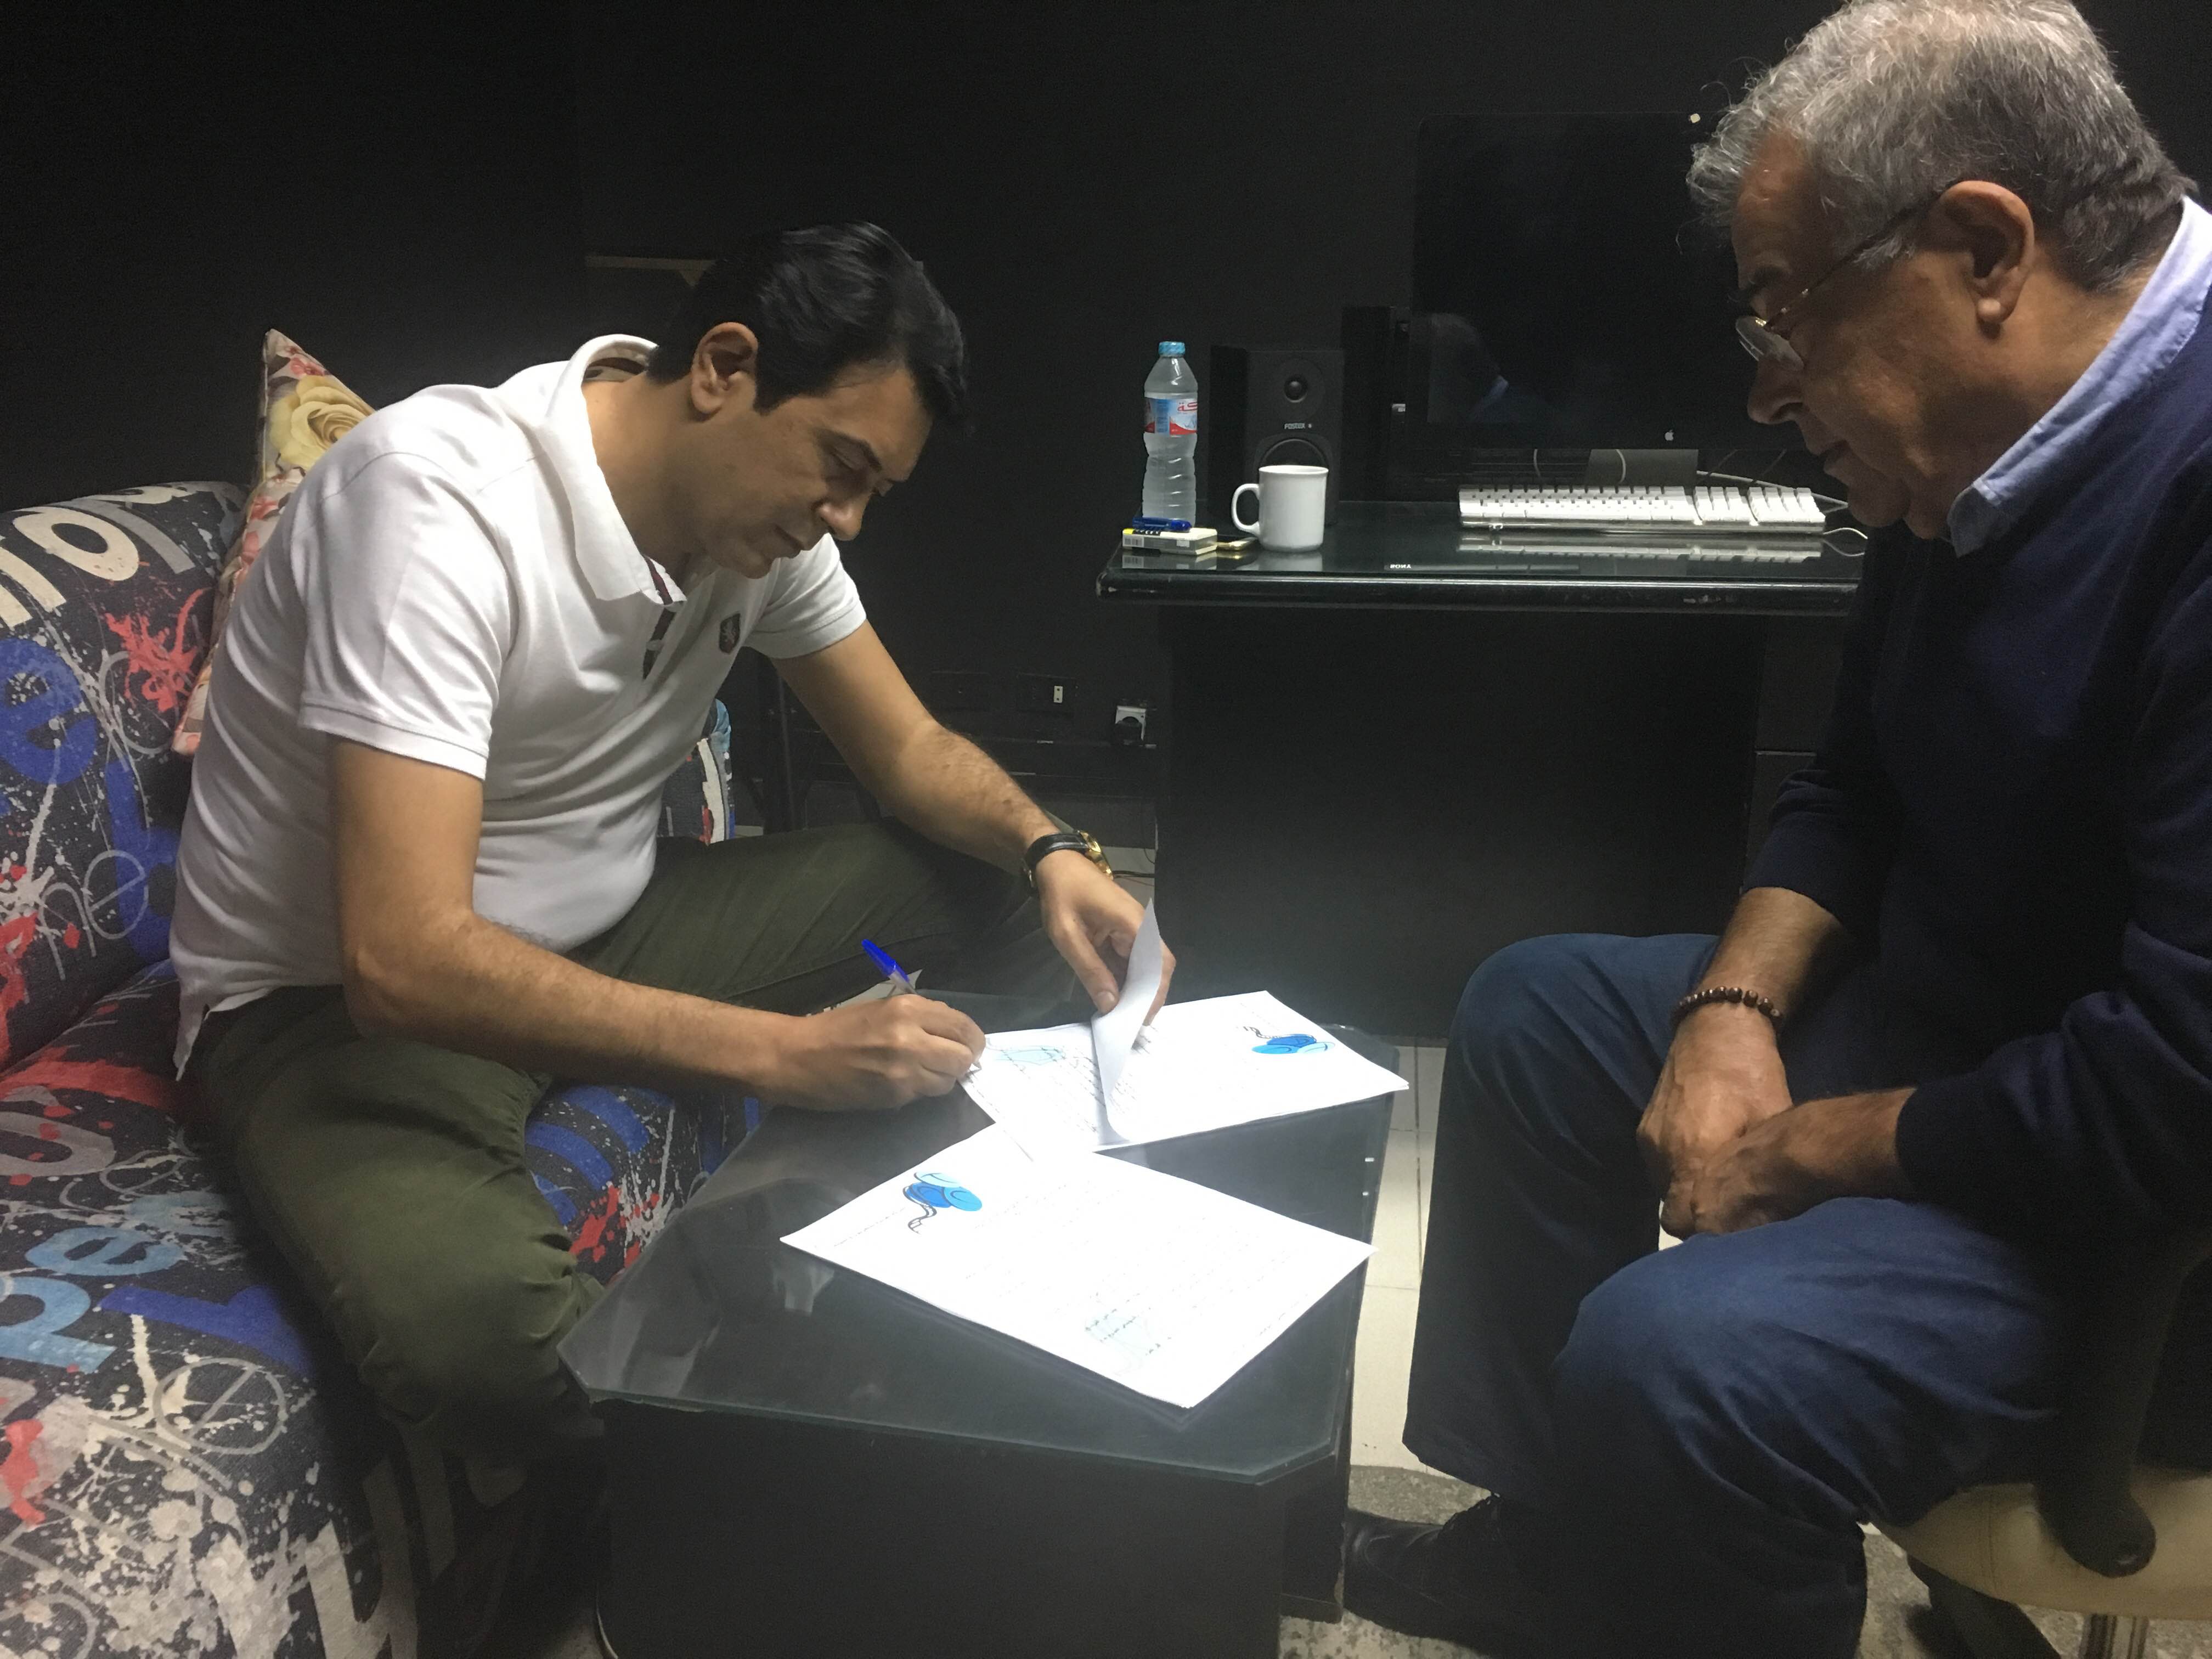 أحمد وفيق والمنتج حسين القلا أثناء التعاقد على صندوق الدنيا (2)